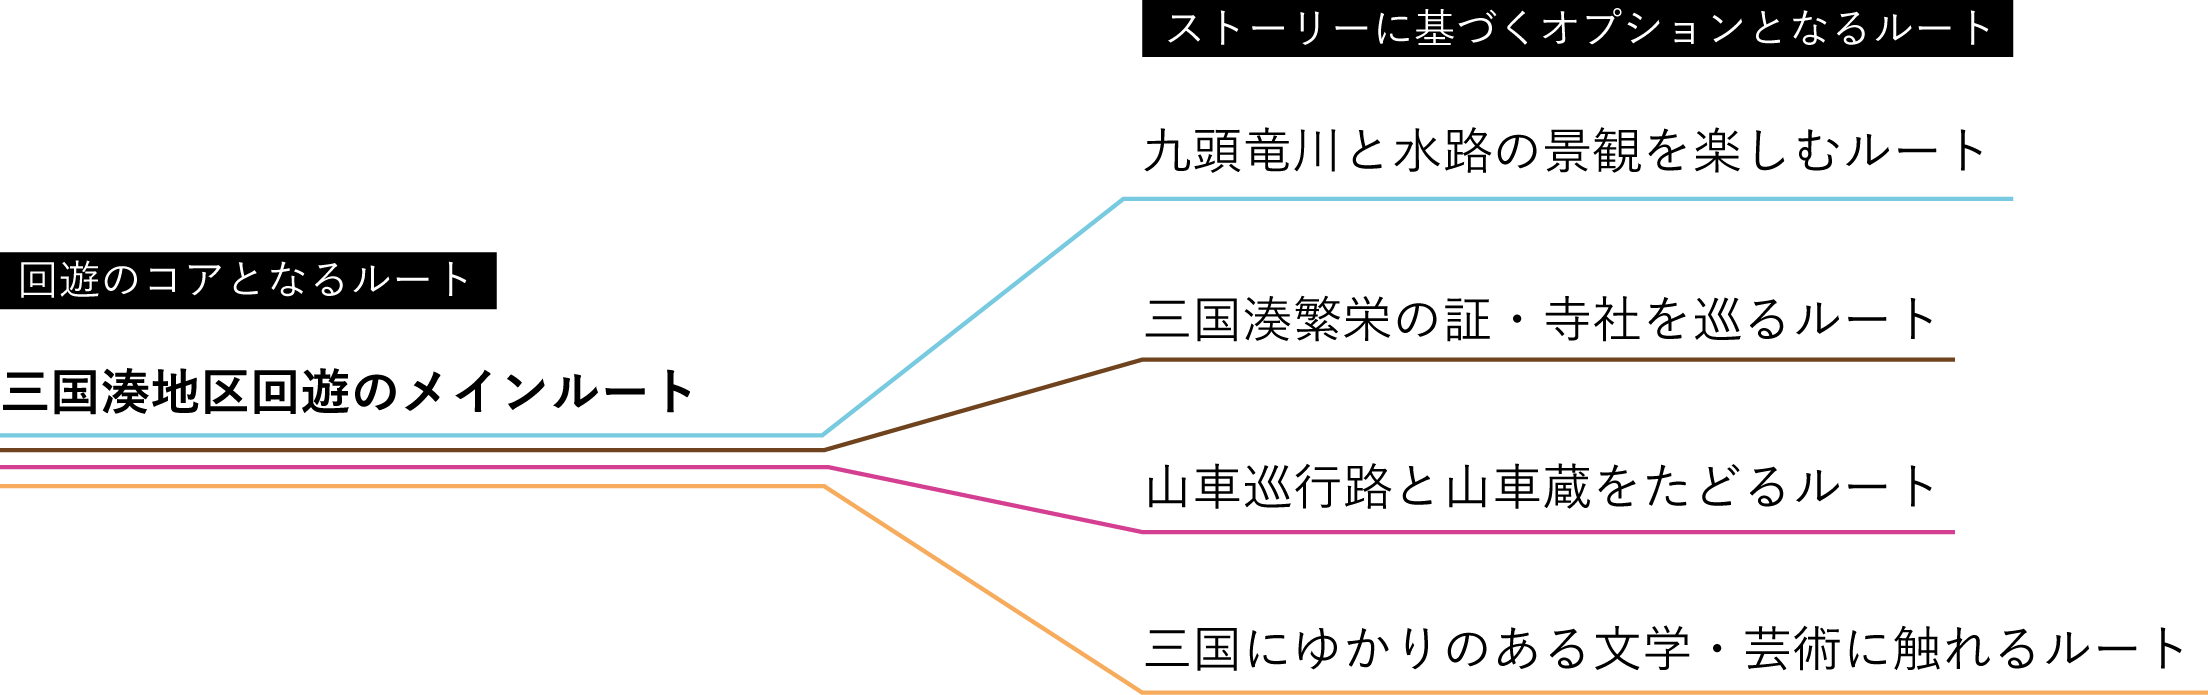 http://ud.t.u-tokyo.ac.jp/blog/_images/%E3%82%B3%E3%82%A2%EF%BC%8B%E3%82%AA%E3%83%97%E3%82%B7%E3%83%A7%E3%83%B3.png